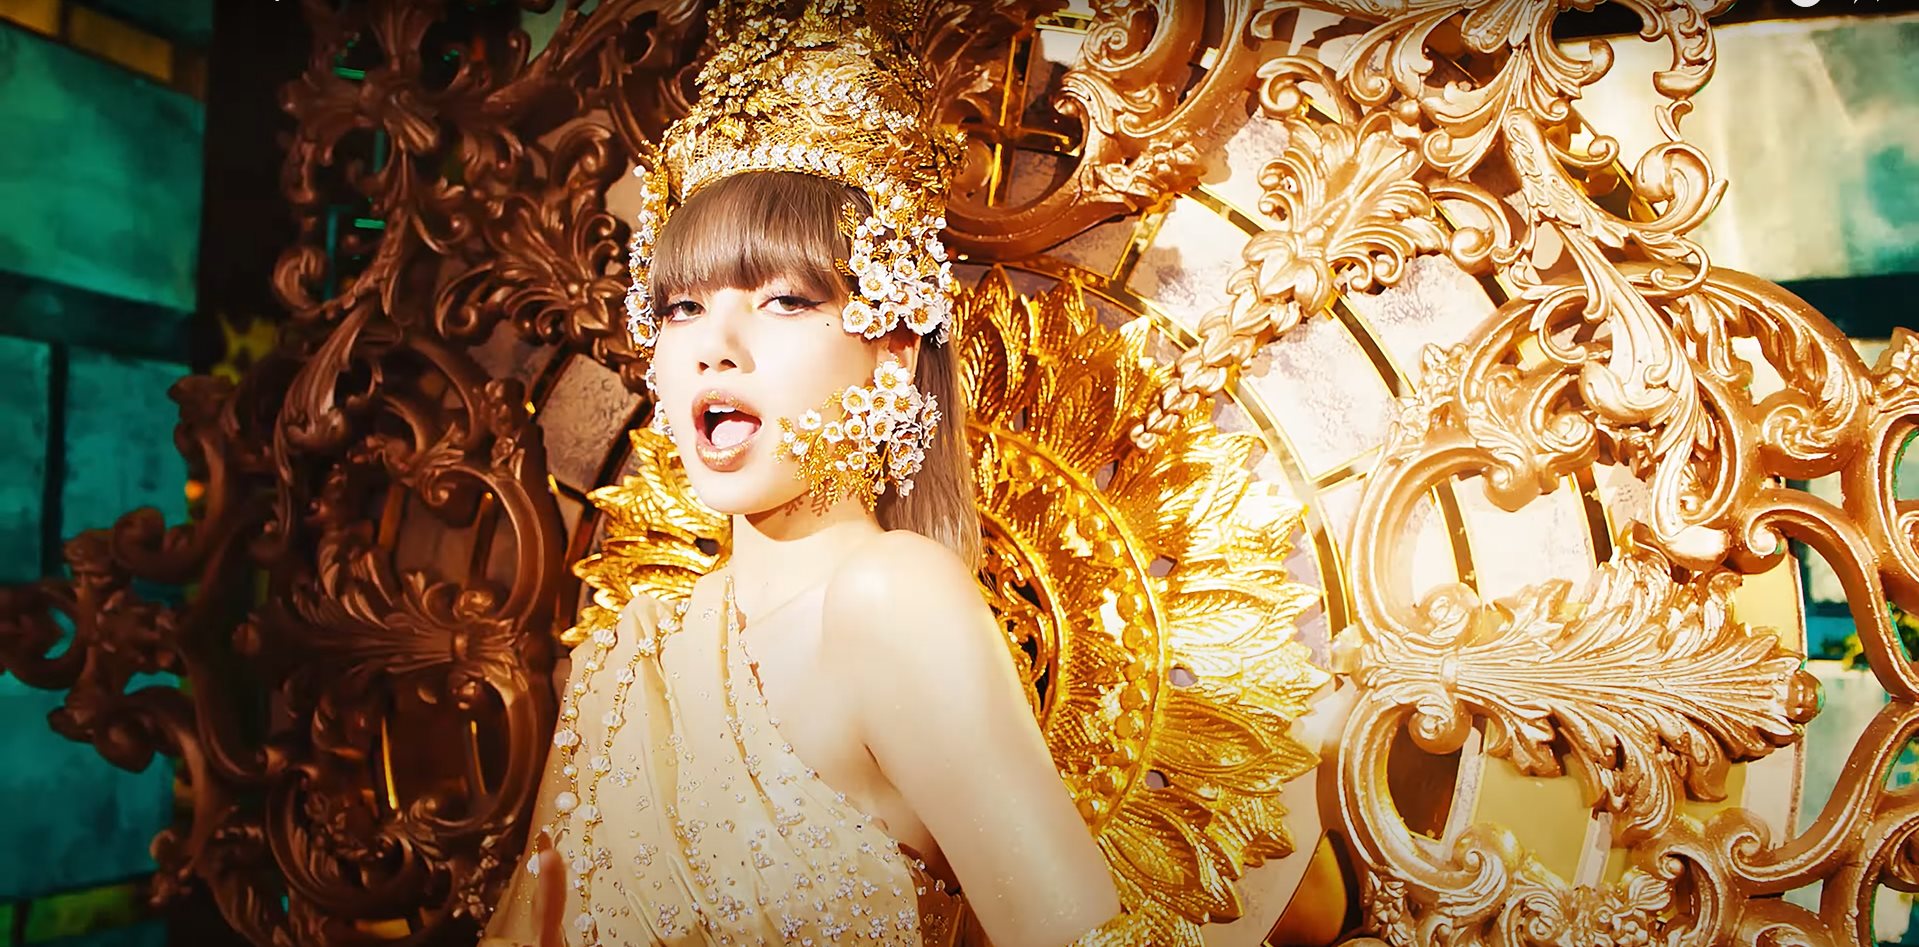 MV mới của cô mang đậm văn hóa Thái Lan, nhận về nhiều phản hồi tích cực